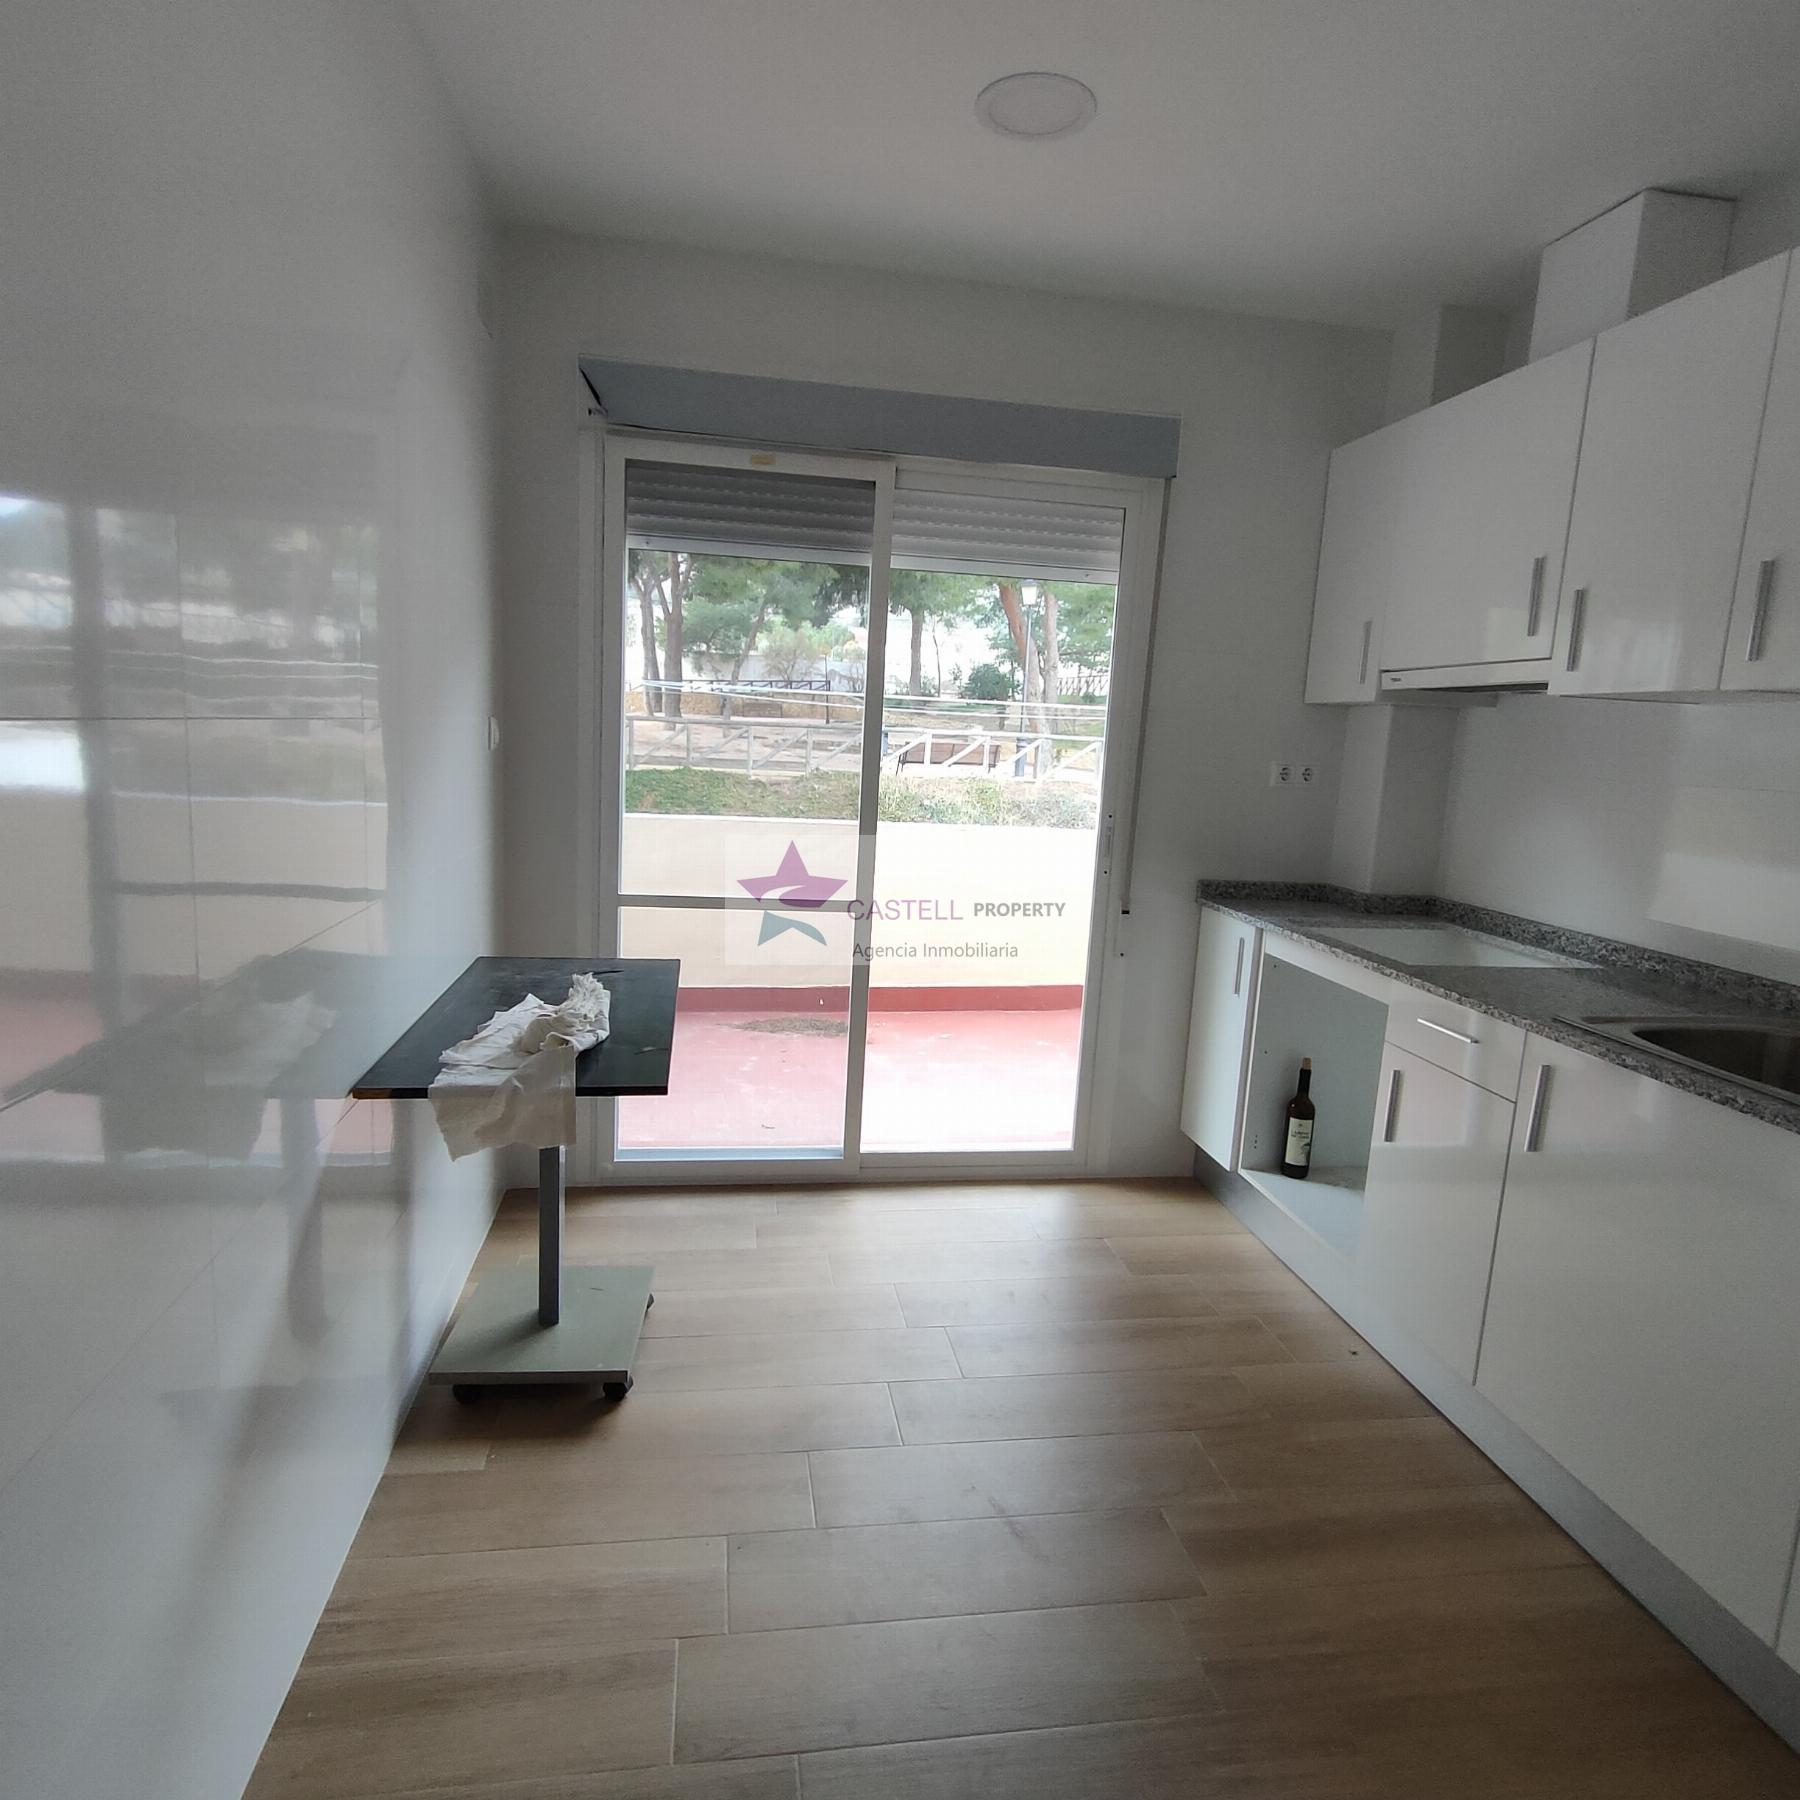 For sale of apartment in La Romana